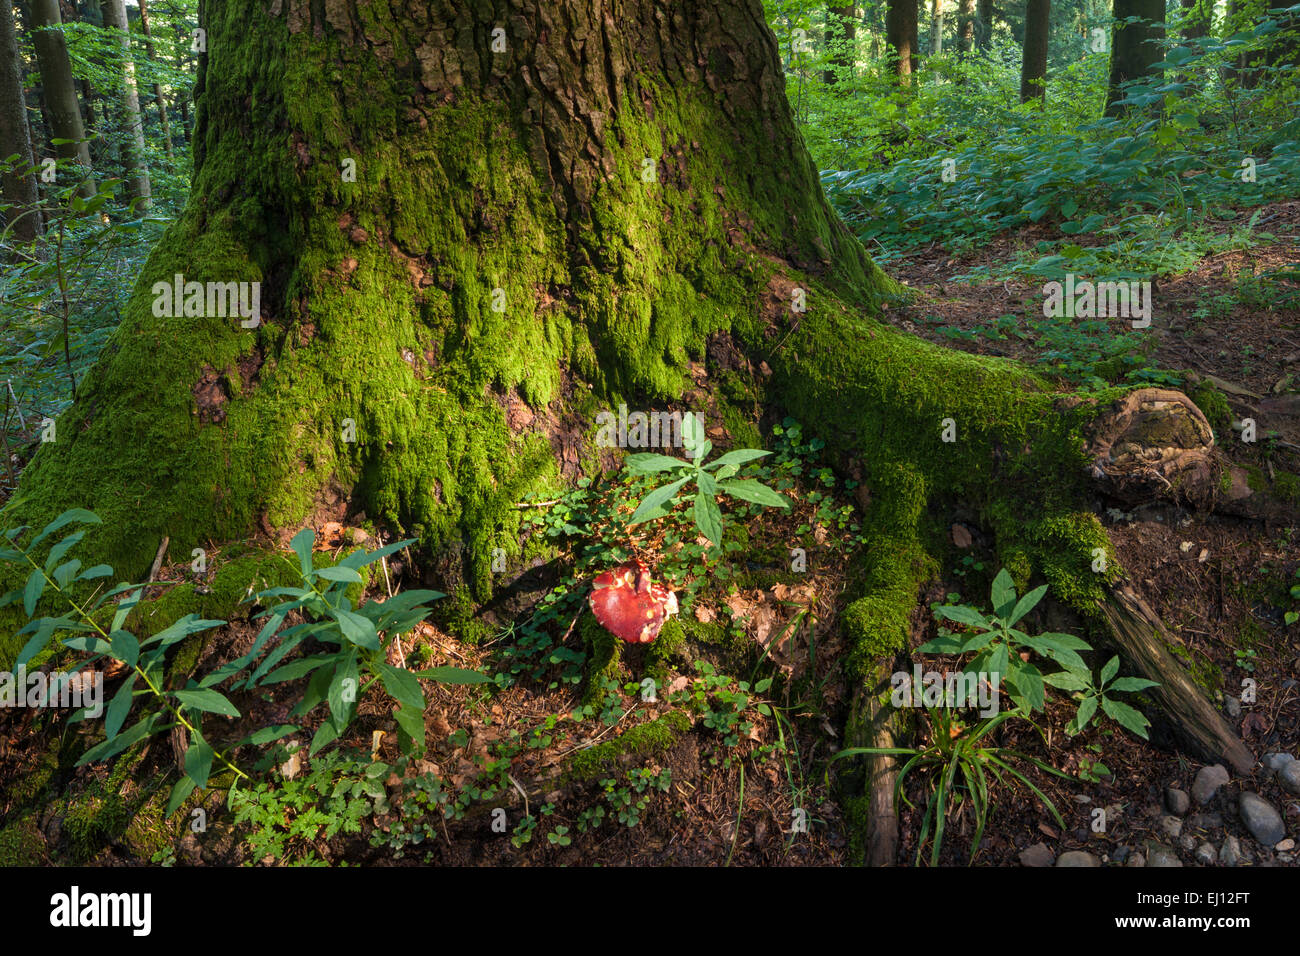 Hundwiler Höhe, altezza Hundwil, Svizzera, Europa, del cantone di Appenzell Ausserrhoden, legno, foresta, alberi, testa a fungo Foto Stock